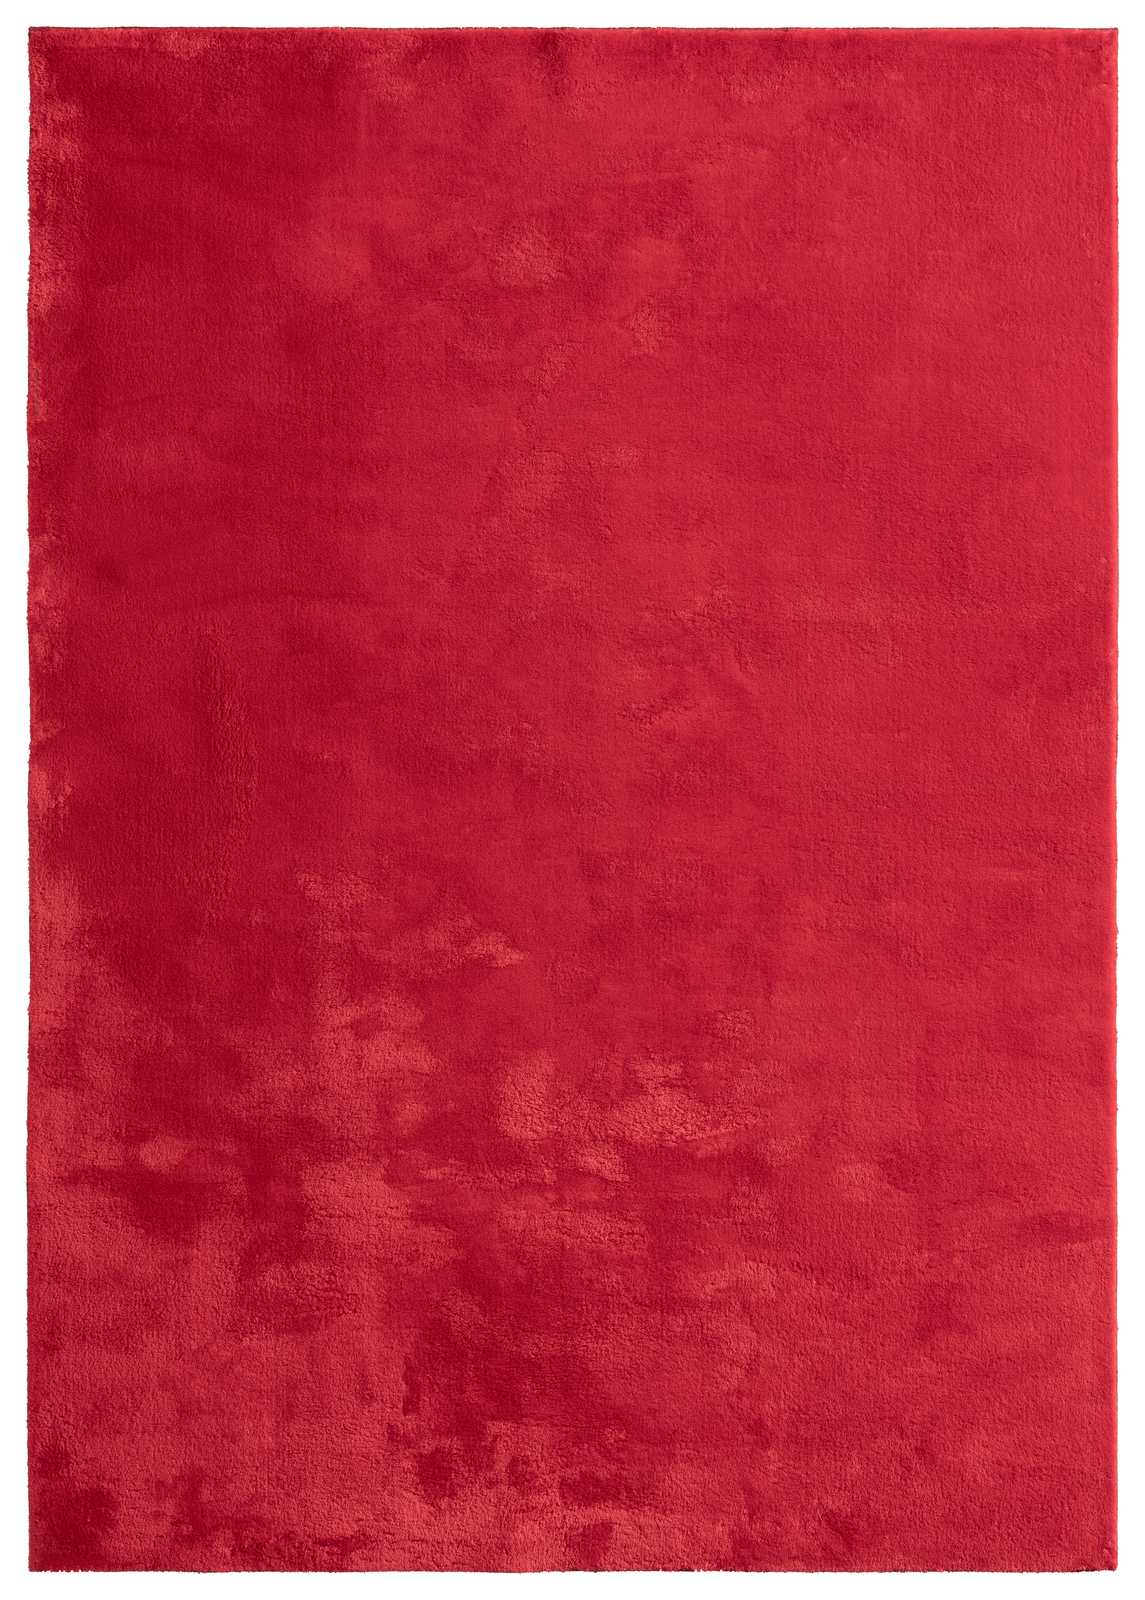             Besonders weicher Hochflor Teppich in Rot – 230 x 160 cm
        